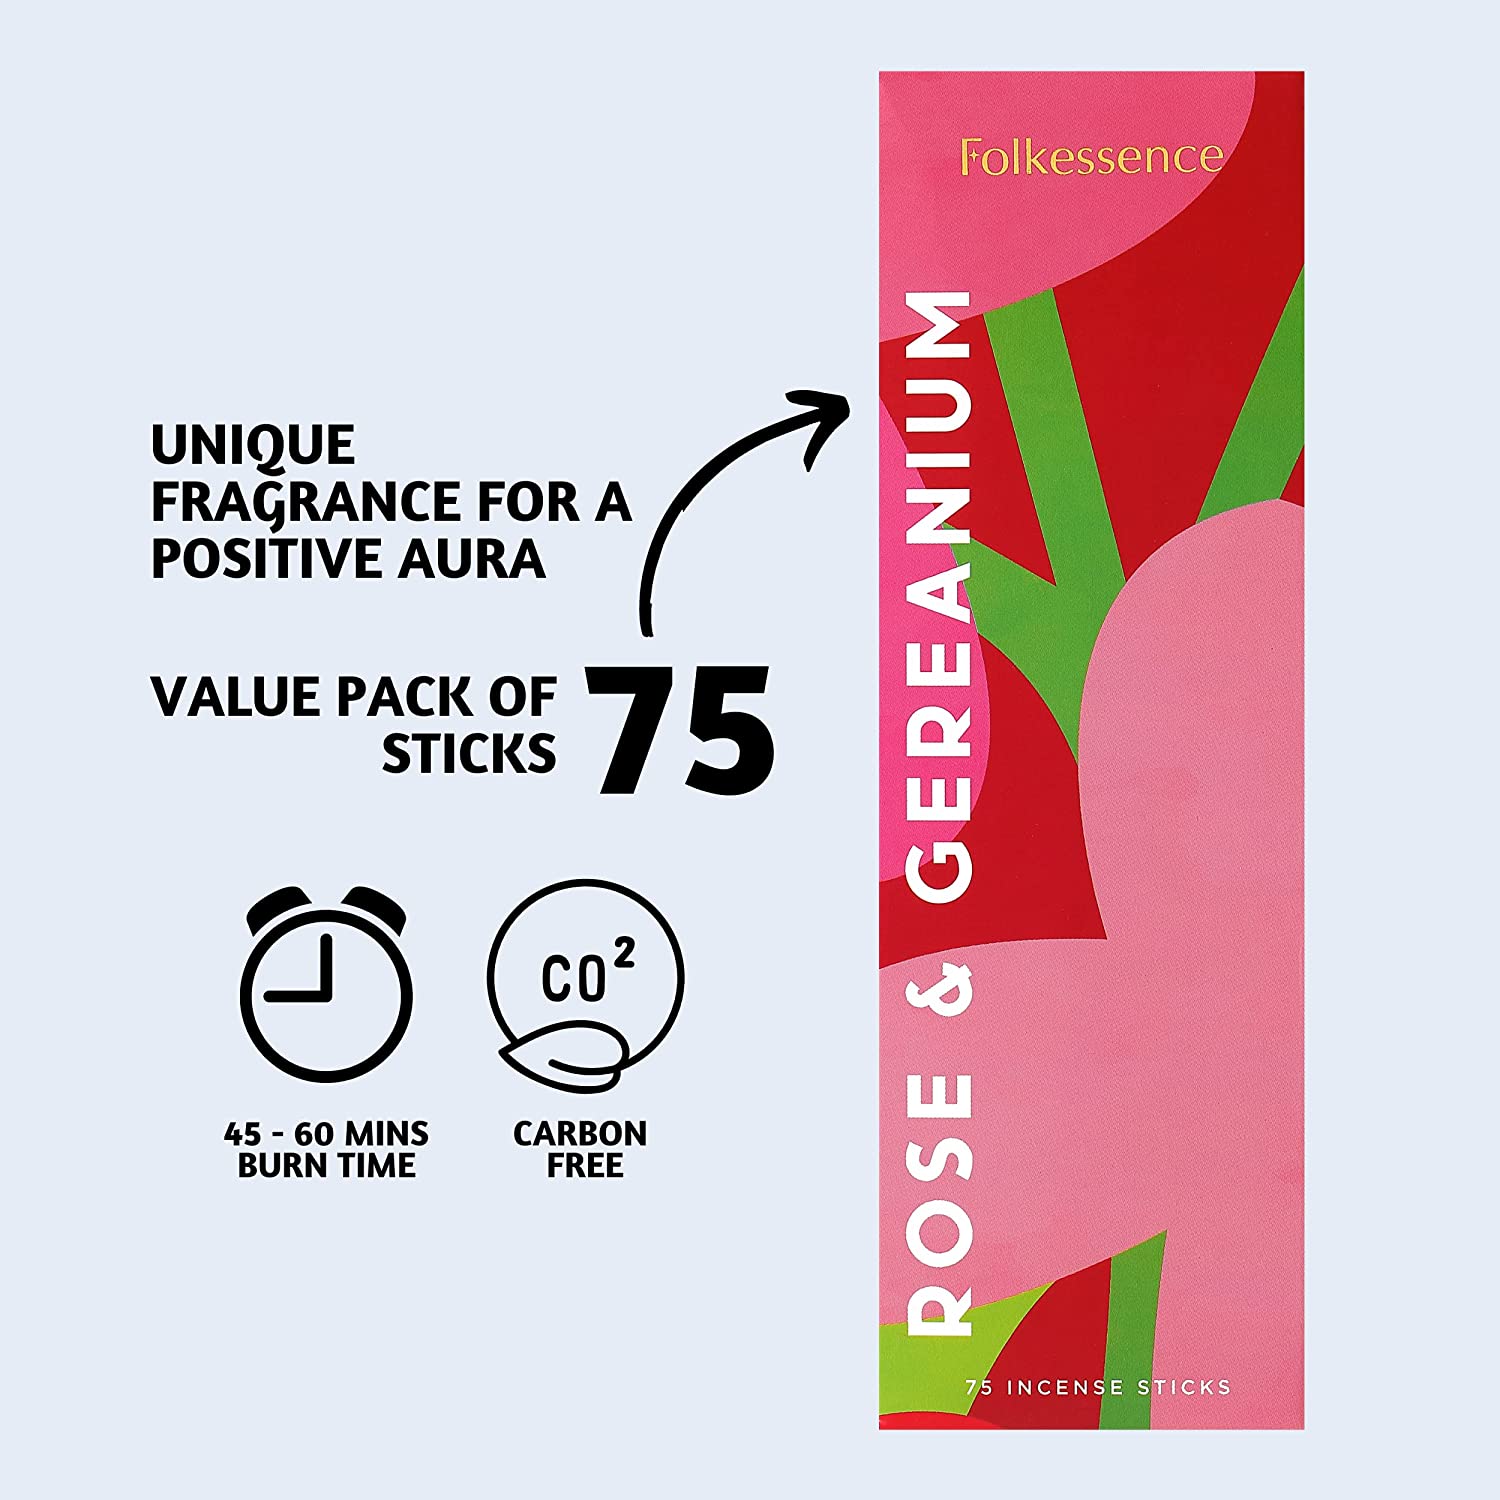 #fragrance_rose-geranium